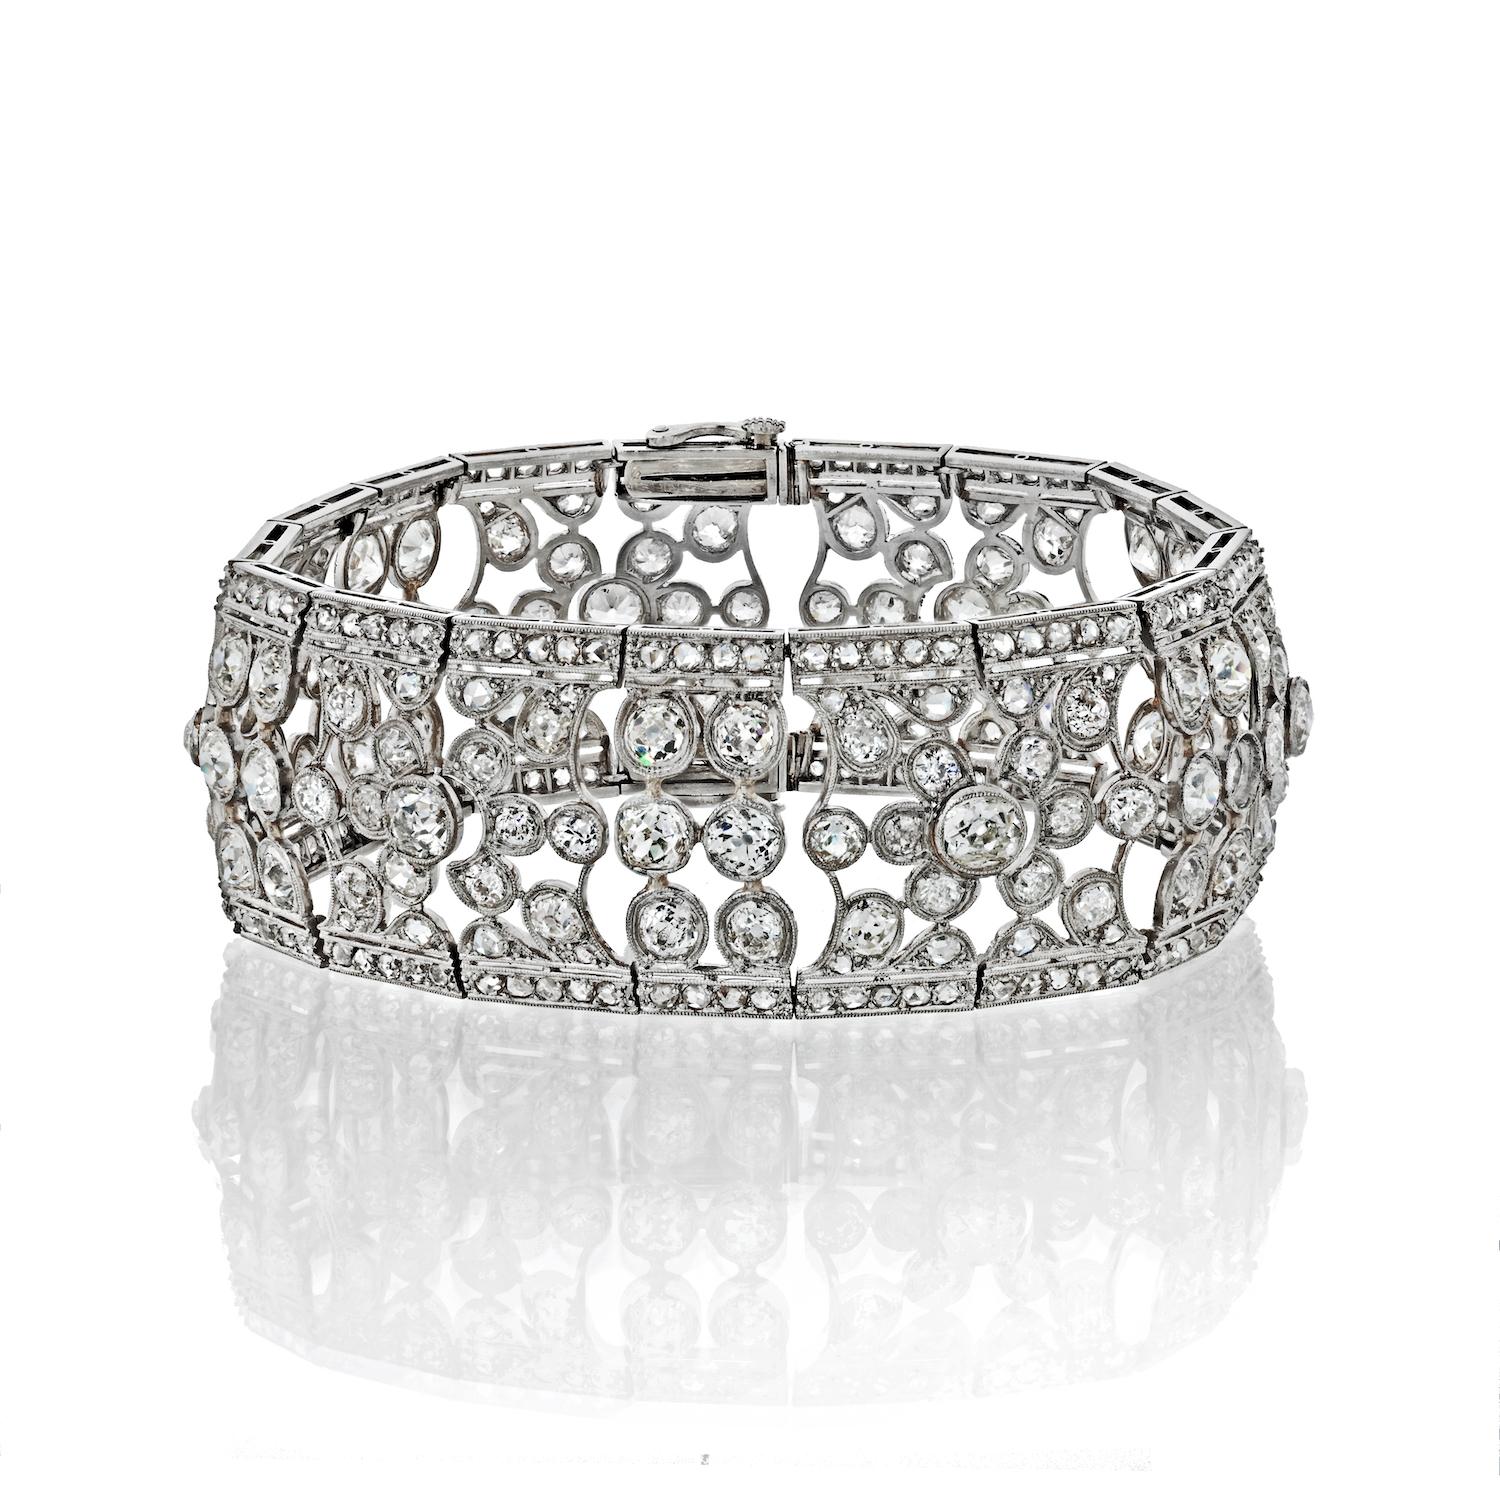 Fabriqué dans les années 1940, ce bracelet ajouré en platine est serti de 316 diamants de taille ancienne. 
Ce bracelet mesure 7,5 pouces de long et 1 pouce de large. 
